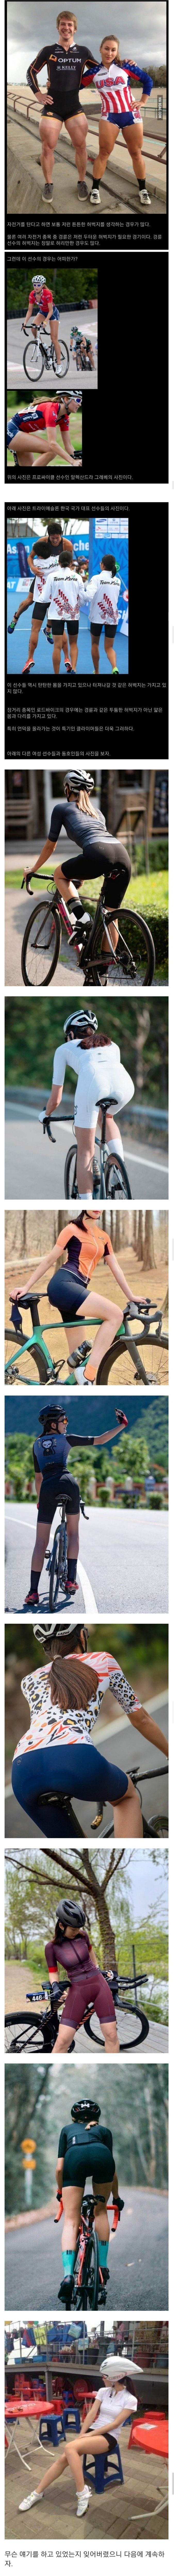 자전거를 타면 허벅지가 굵어질까?